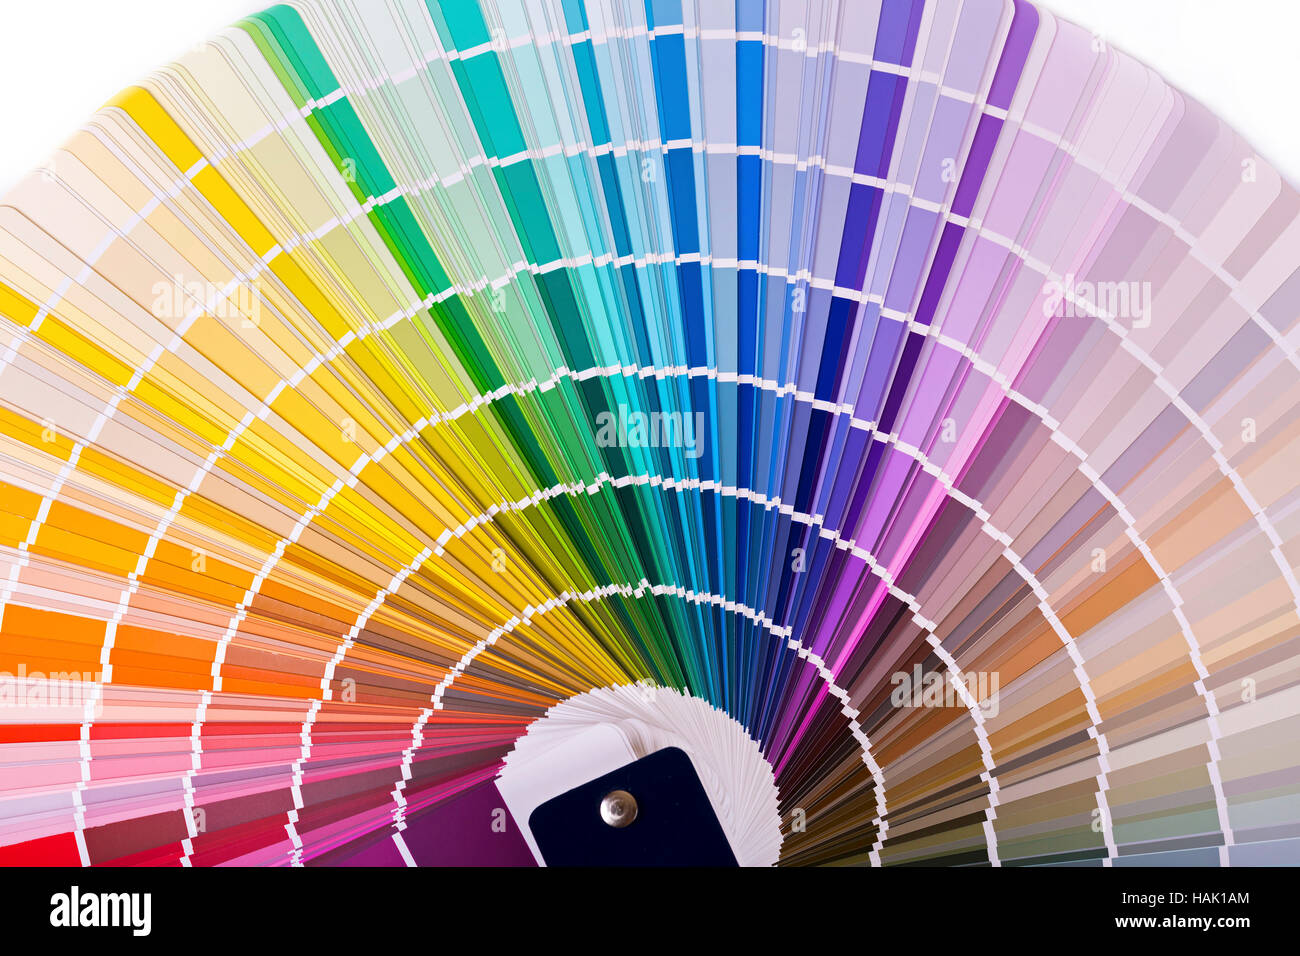 Tavolozza dei colori, catalogo con design i campioni di vernice Foto Stock